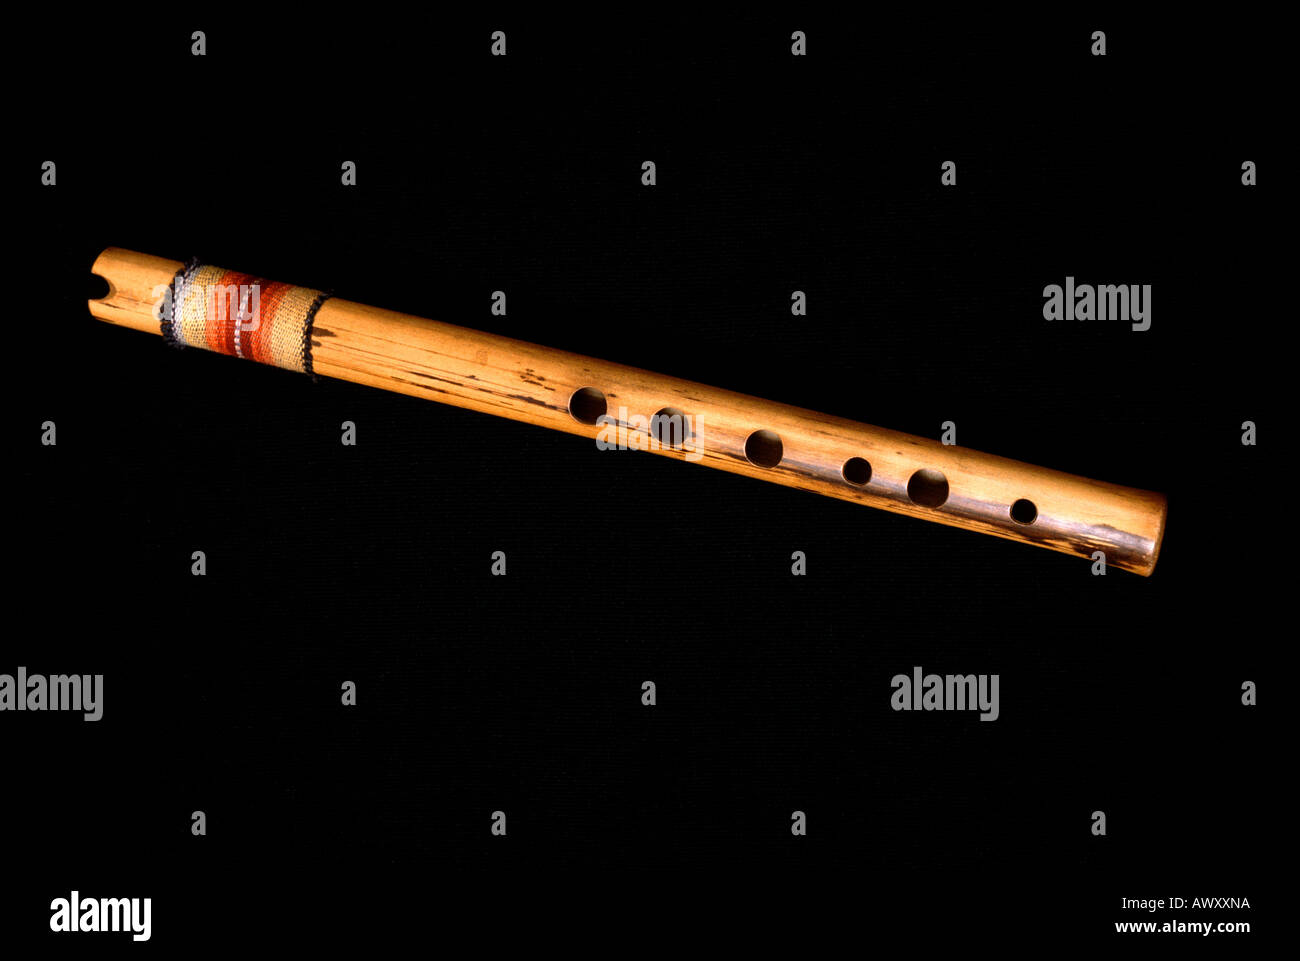 Quena flute immagini e fotografie stock ad alta risoluzione - Alamy